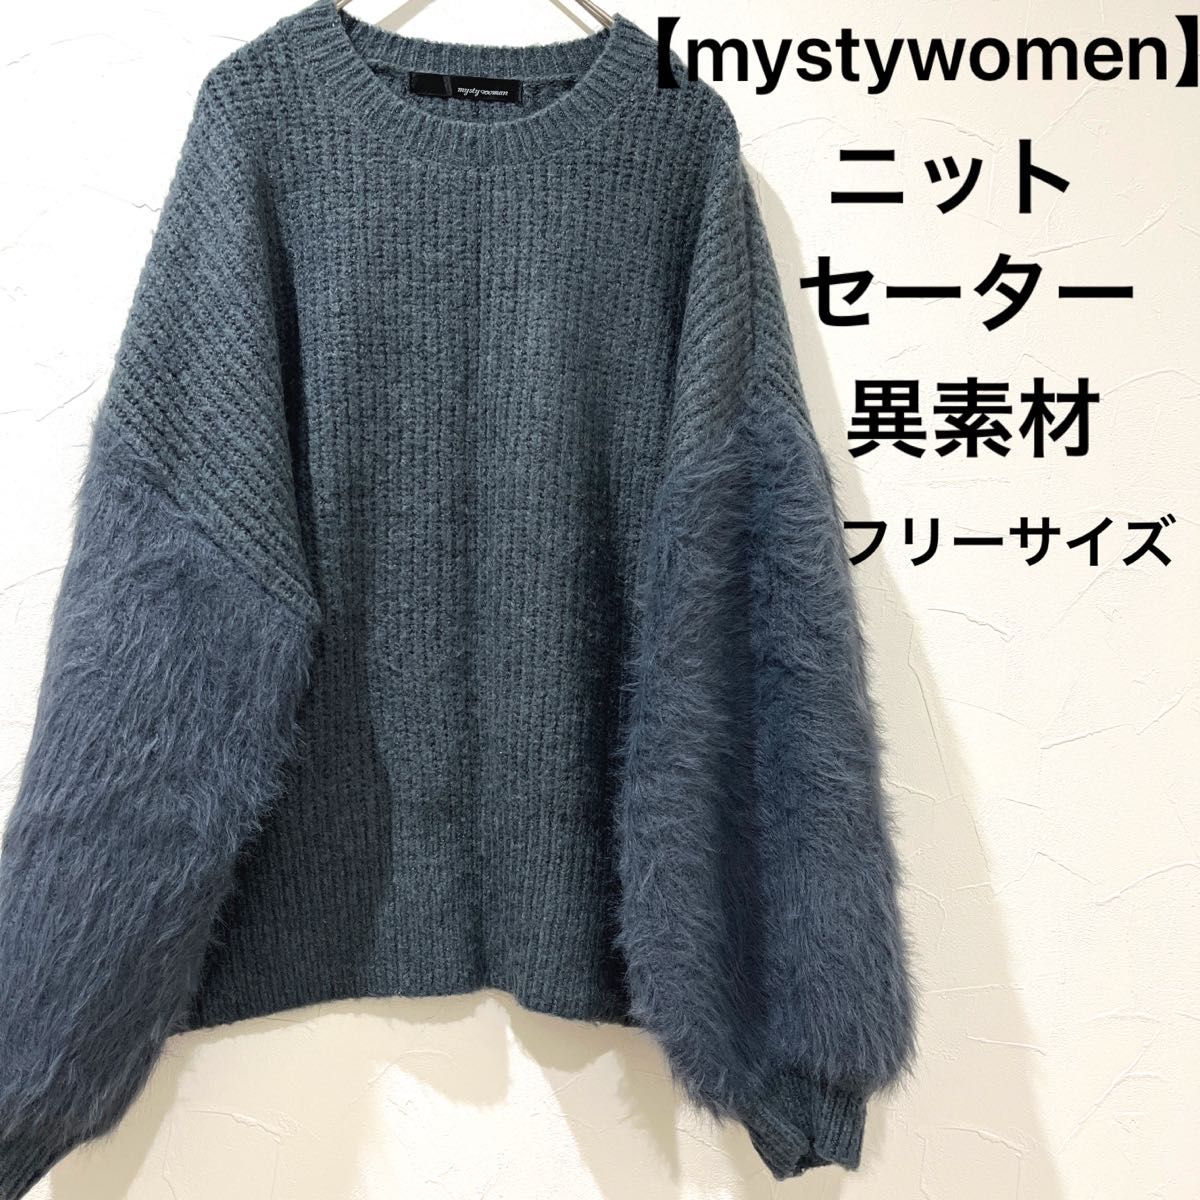 【mysty woman】ミスティウーマン 異素材 セーター ニットセーター